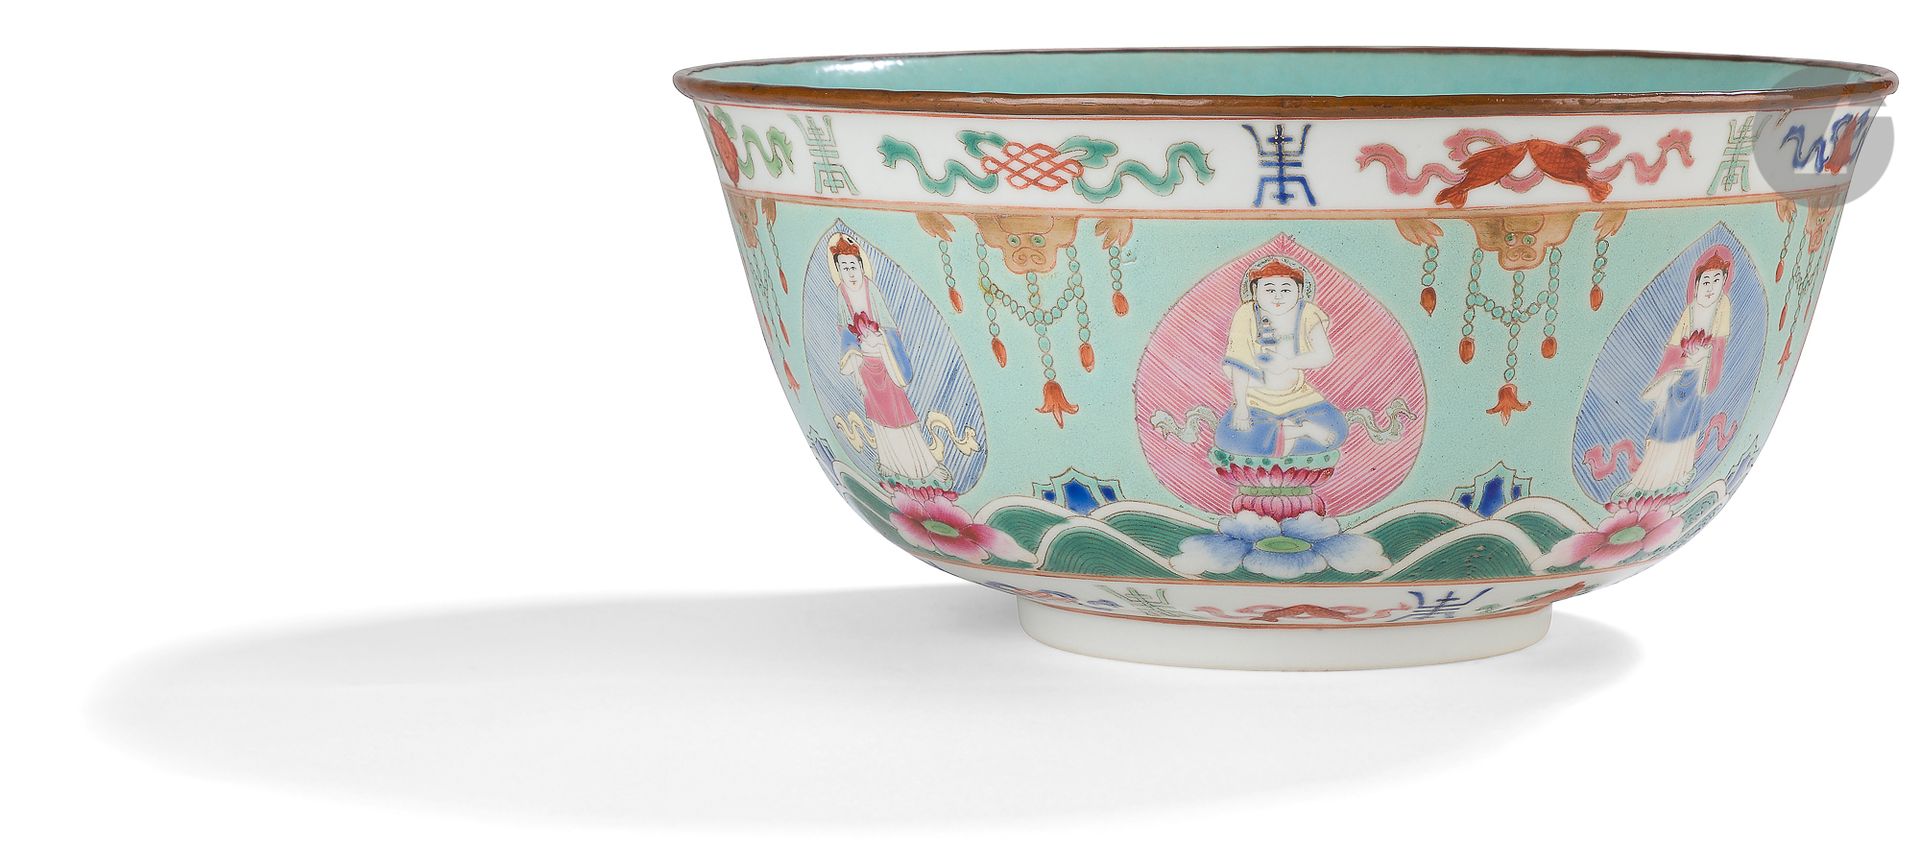 Null 一件Baragon Tumed粉彩瓷碗，中国，19世纪，道光时期（1821-1850
）。顶部和底部装饰有粉彩楣，描绘了八个佛教徽记，每个徽记与一个寿&hellip;